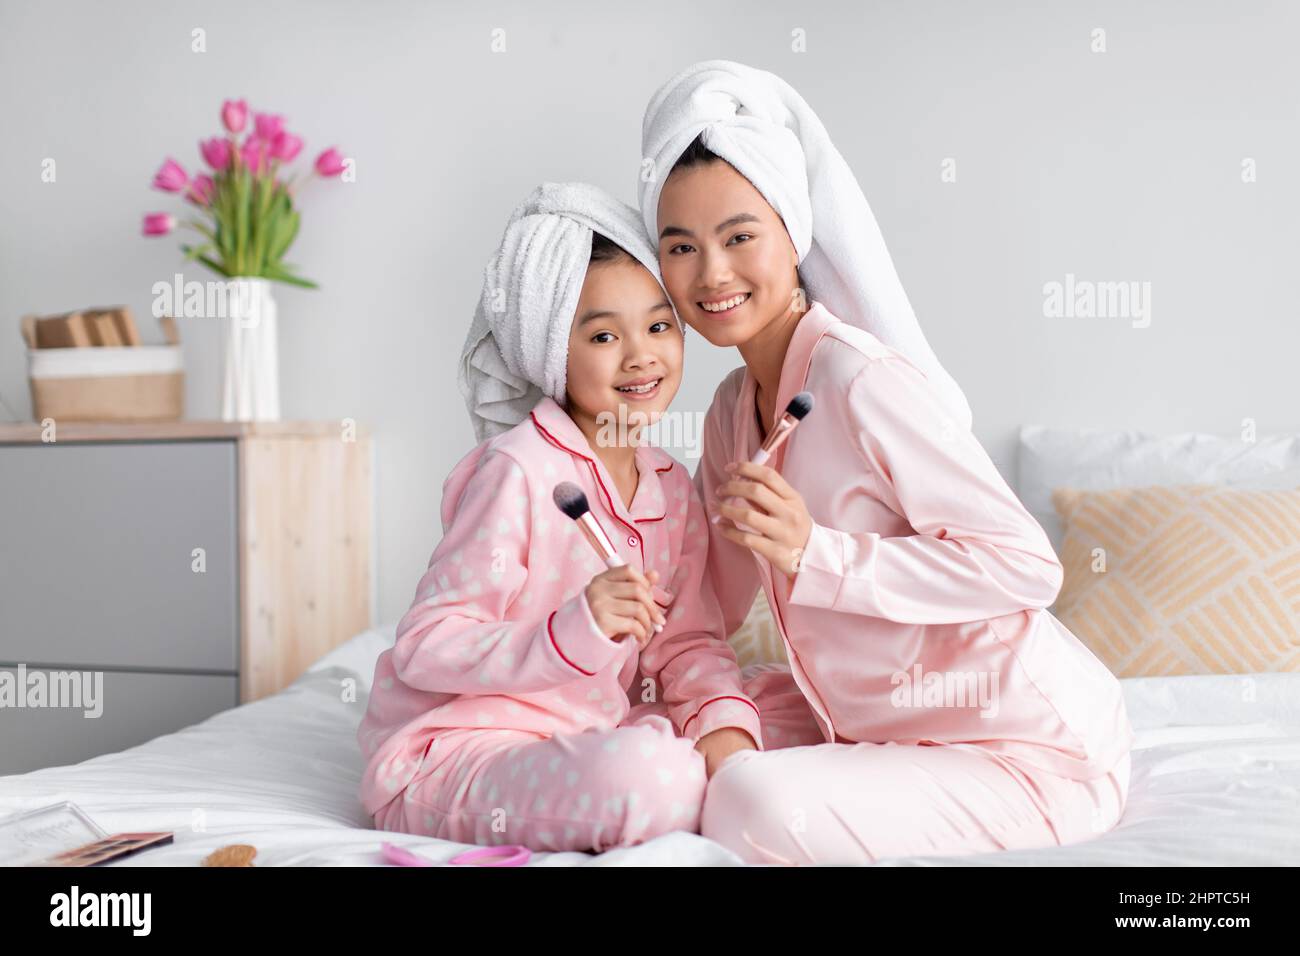 Lächelnd junge hübsche japanische weibliche und Teenager-Mädchen in  Schlafanzug und Handtuch sitzen auf dem Bett mit Make-up-Bürsten  Stockfotografie - Alamy